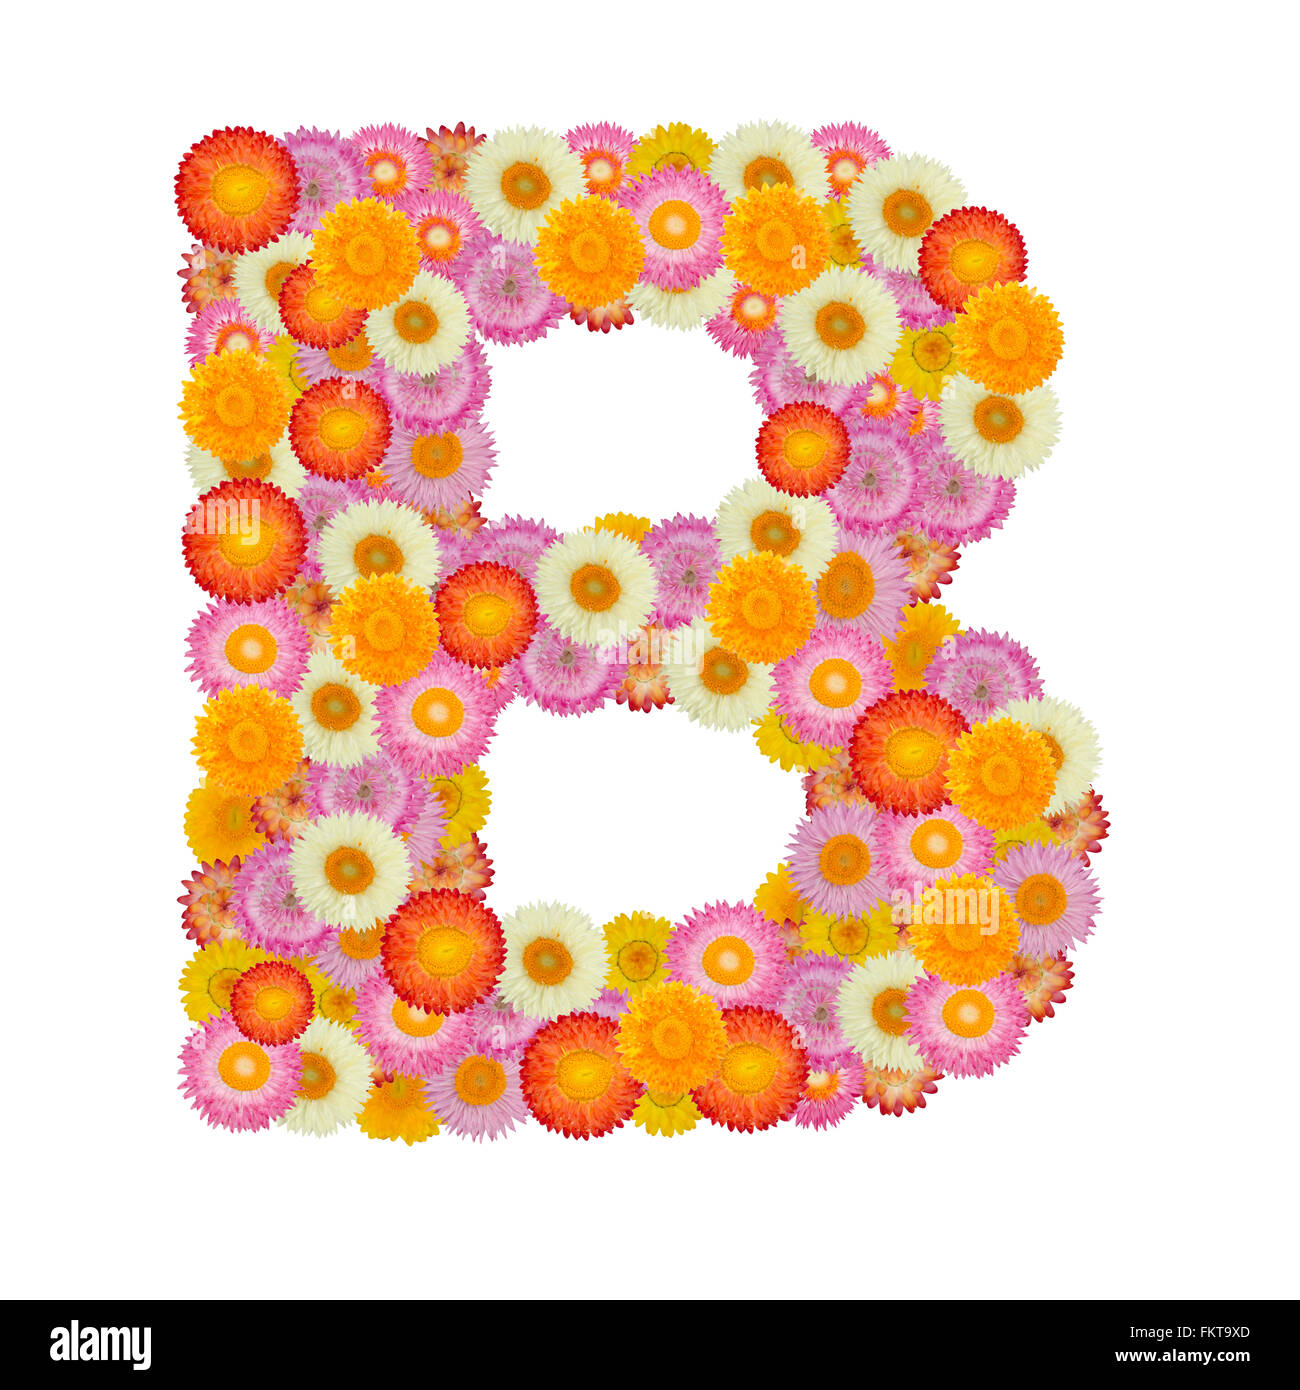 Lettre B alphabet à fleur de paille isolé sur fond blanc Banque D'Images